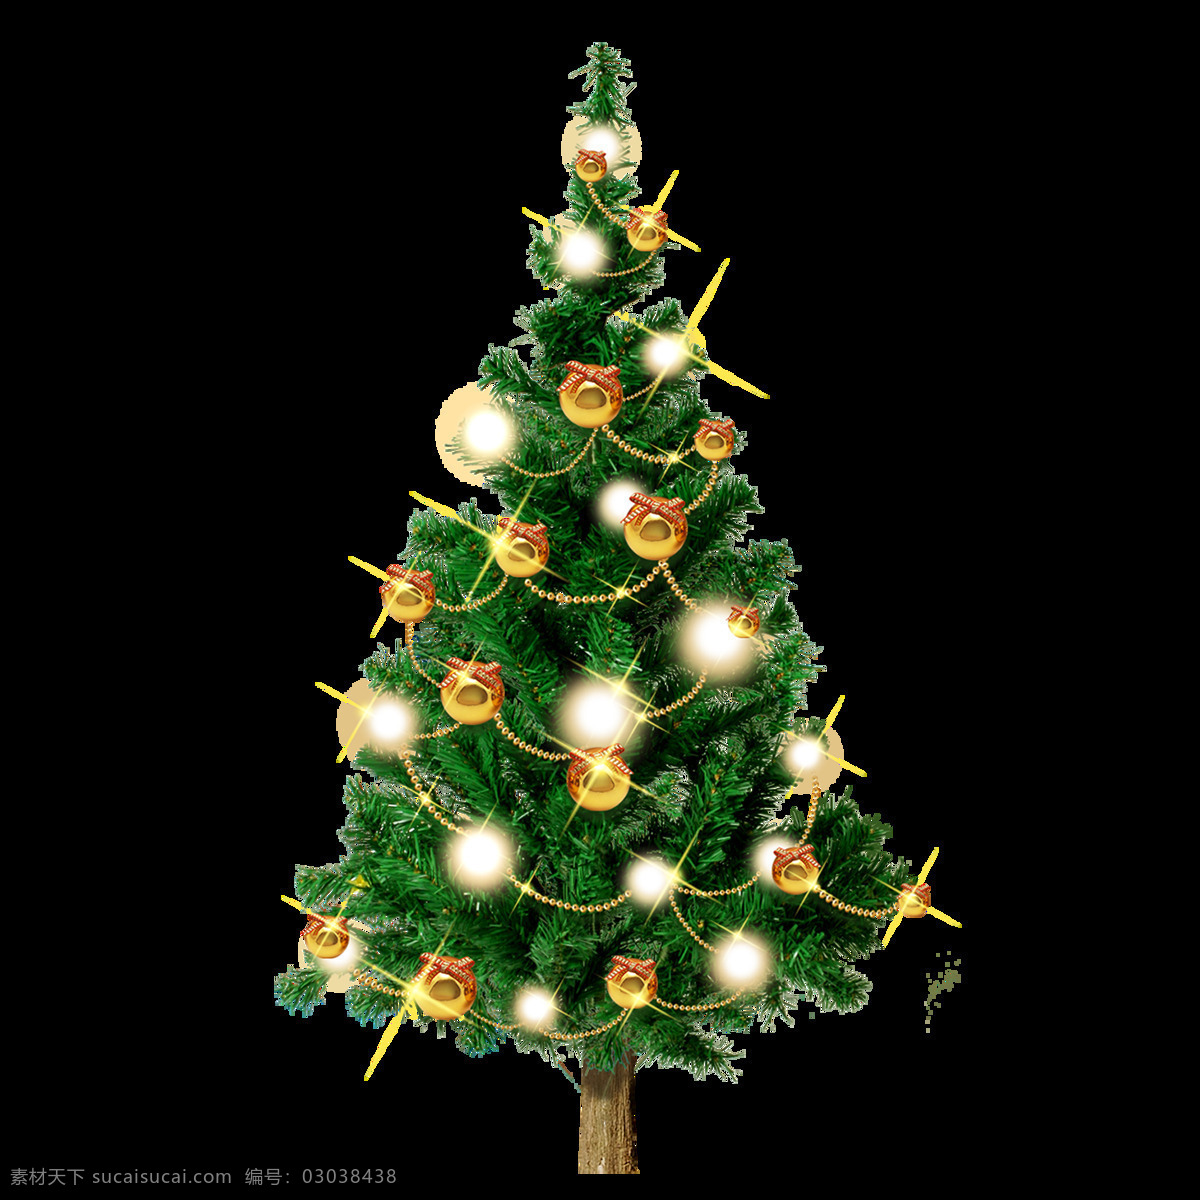 棵 挂 满 礼物 圣诞树 元素 圣诞 节日